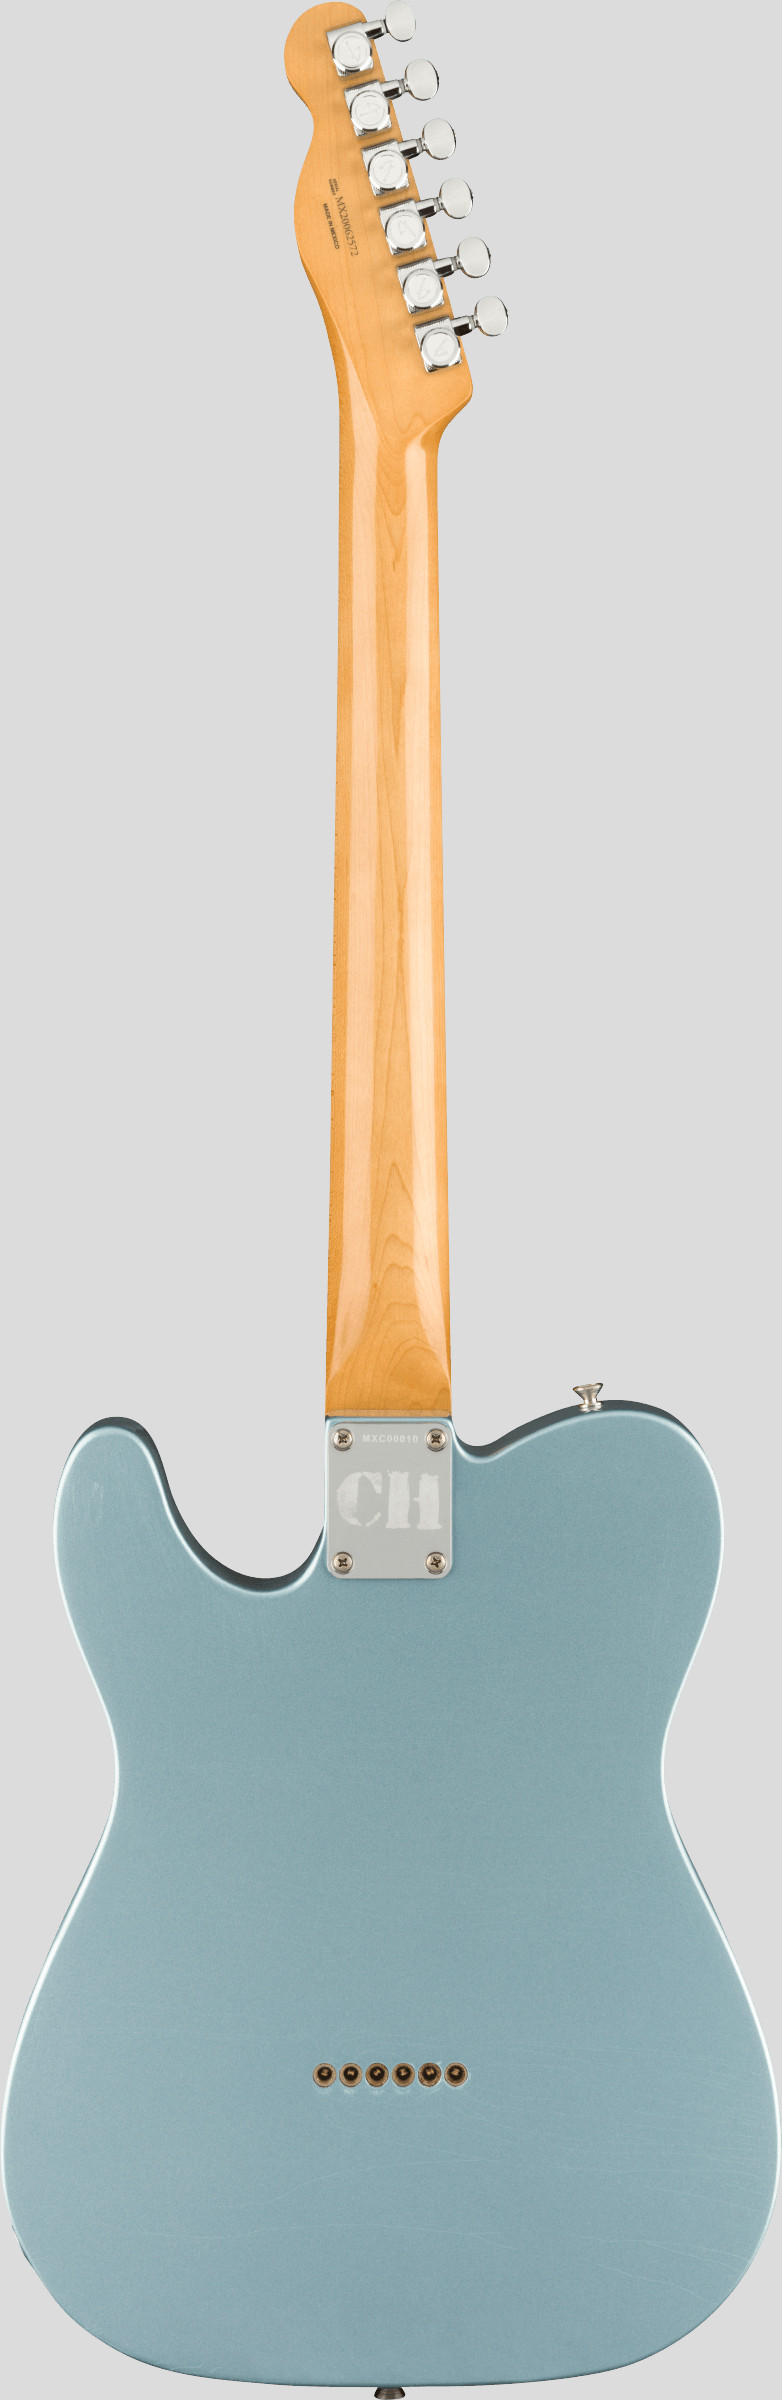 Fender Chrissie Hynde Road Worn Telecaster Ice Blue Metallic 2